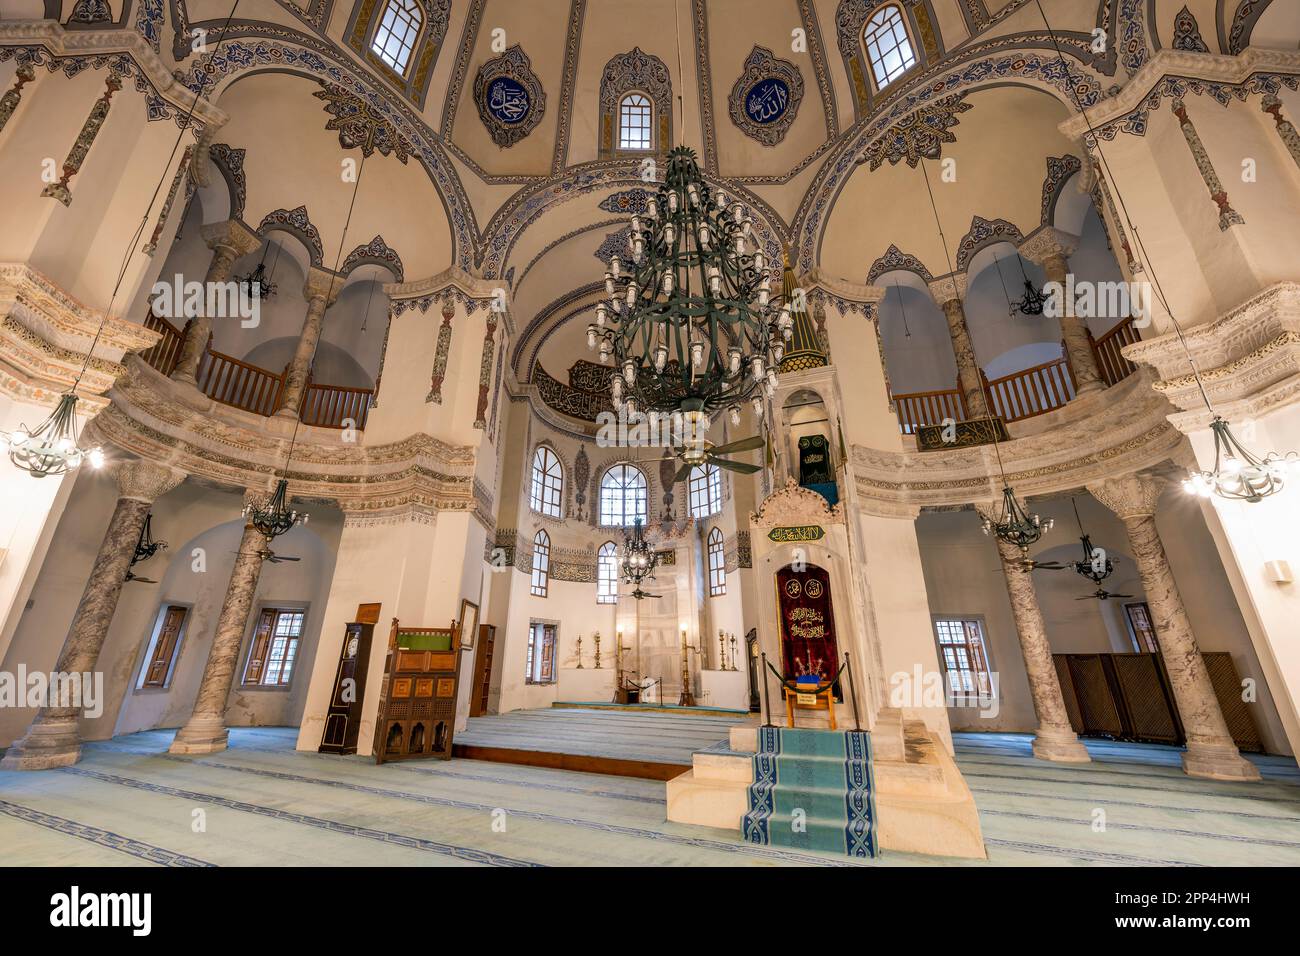 Intérieur de la petite mosquée Sainte-Sophie (Kucuk Ayasofya Camii), Istanbul, Turquie Banque D'Images